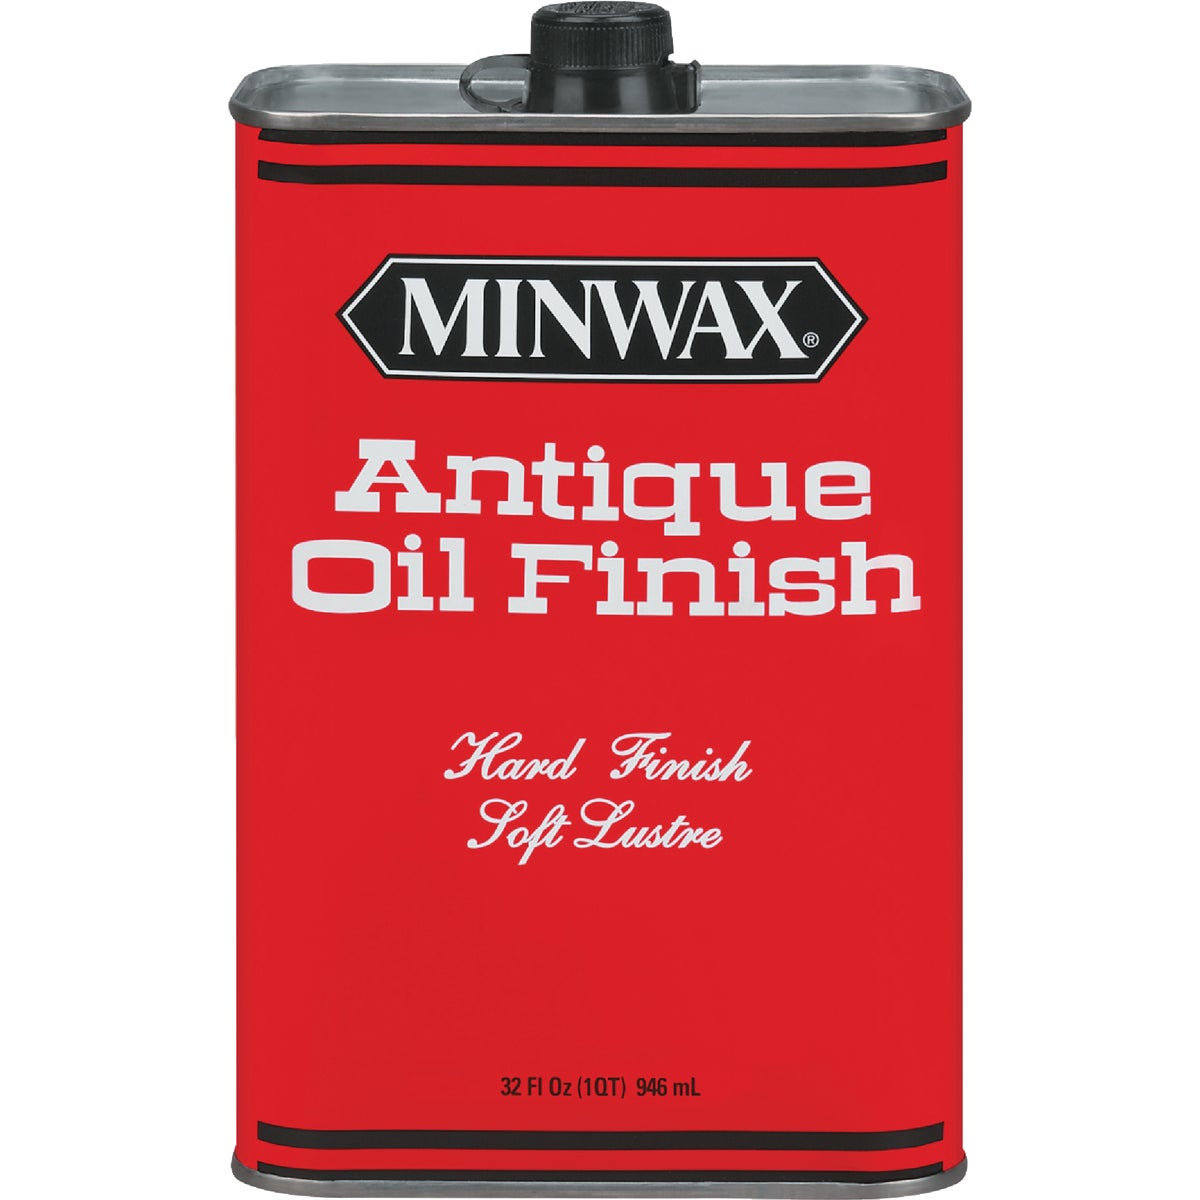 Minwax finish oil